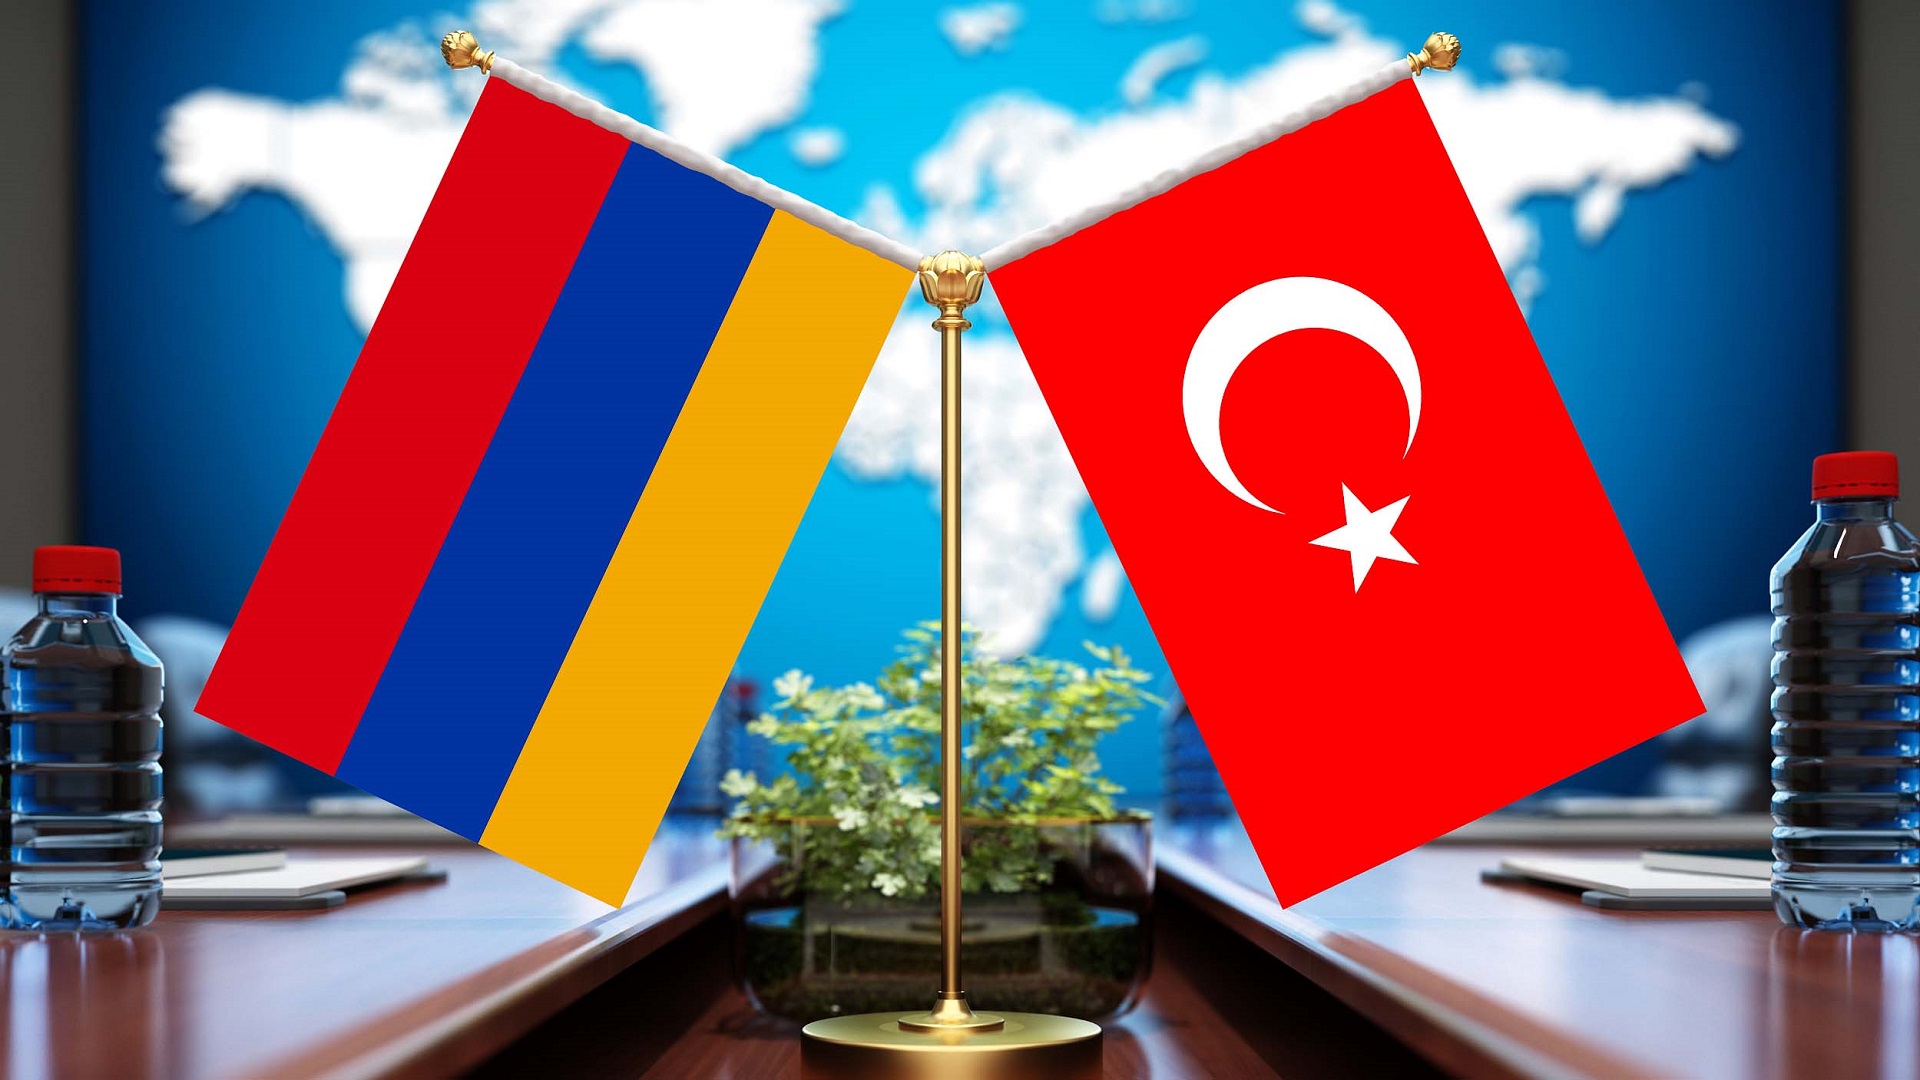 Թուրքիա-Հայաստան 4-րդ հանդիպումը կկայանա հուլիսի 1-ին